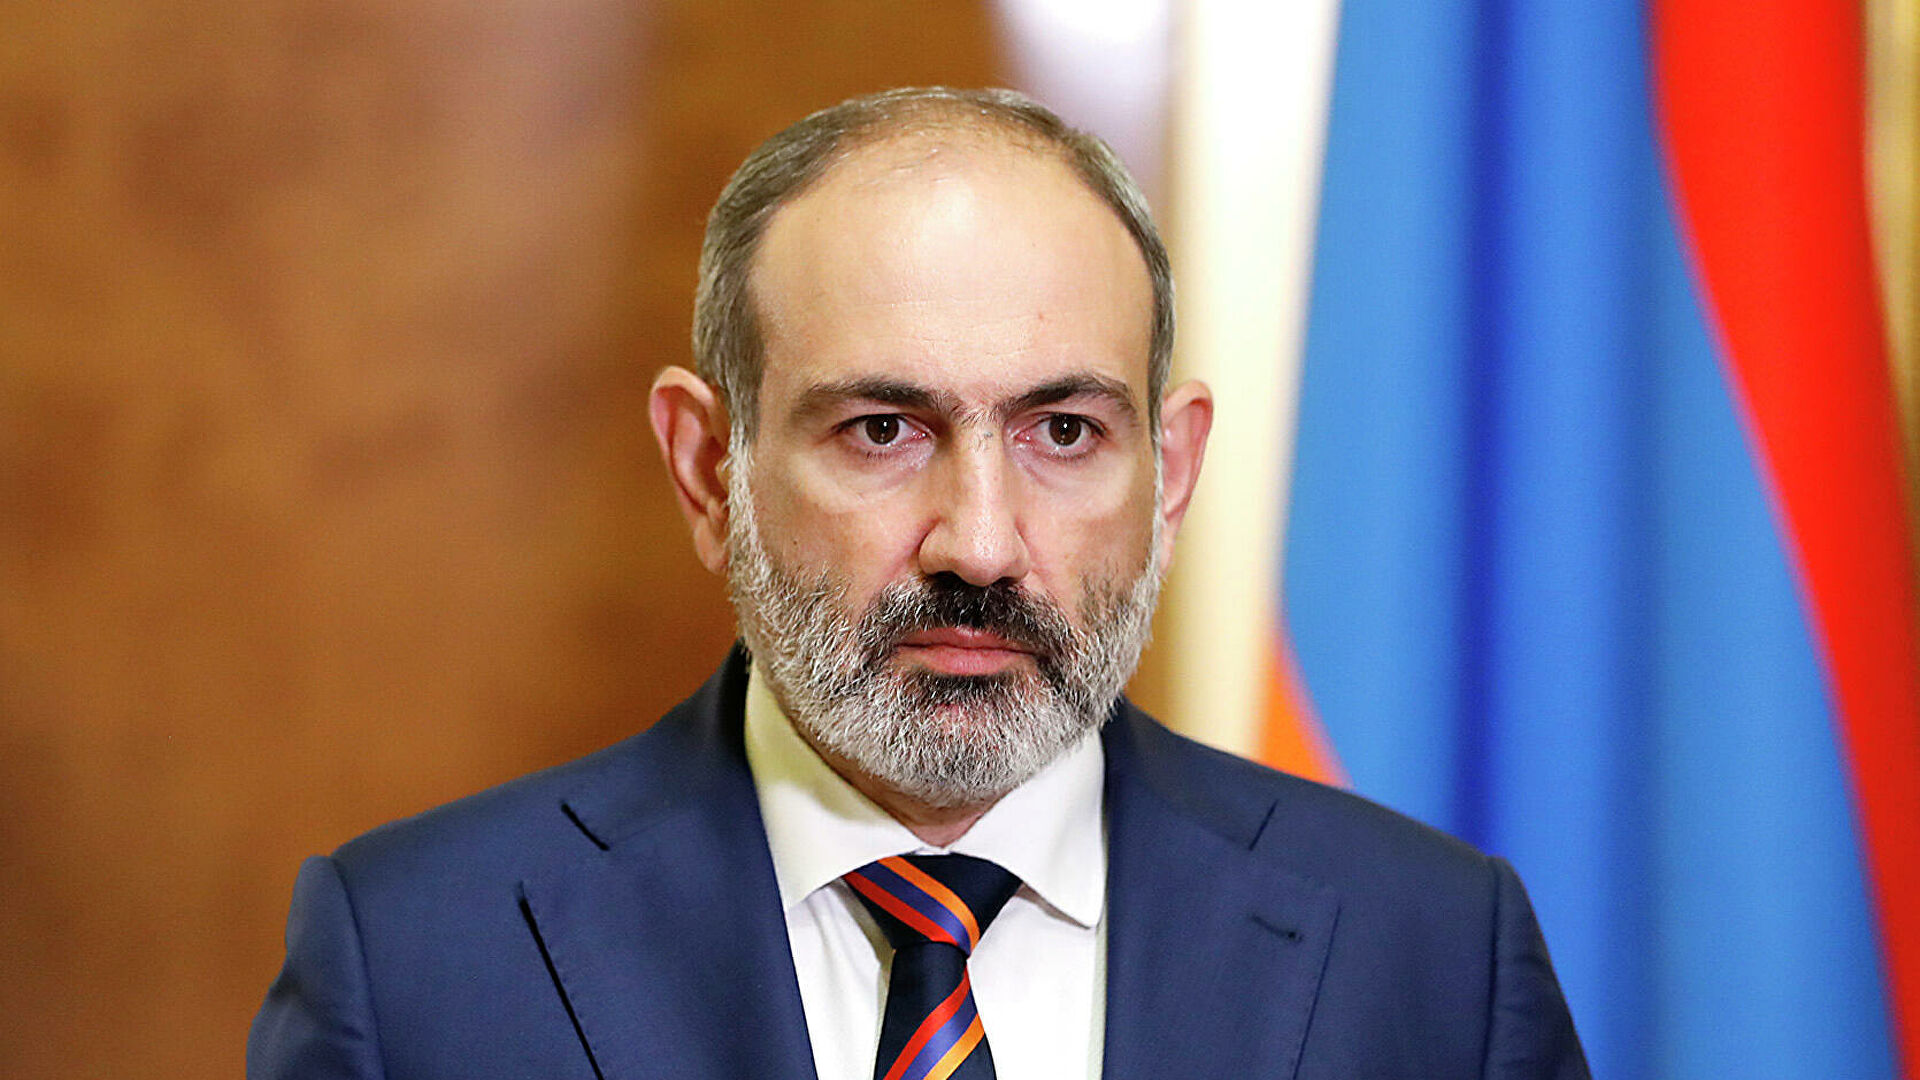 Пашинян обратился к армянскому народу из-за ситуации в Карабахе: "Наши потери очень велики" 